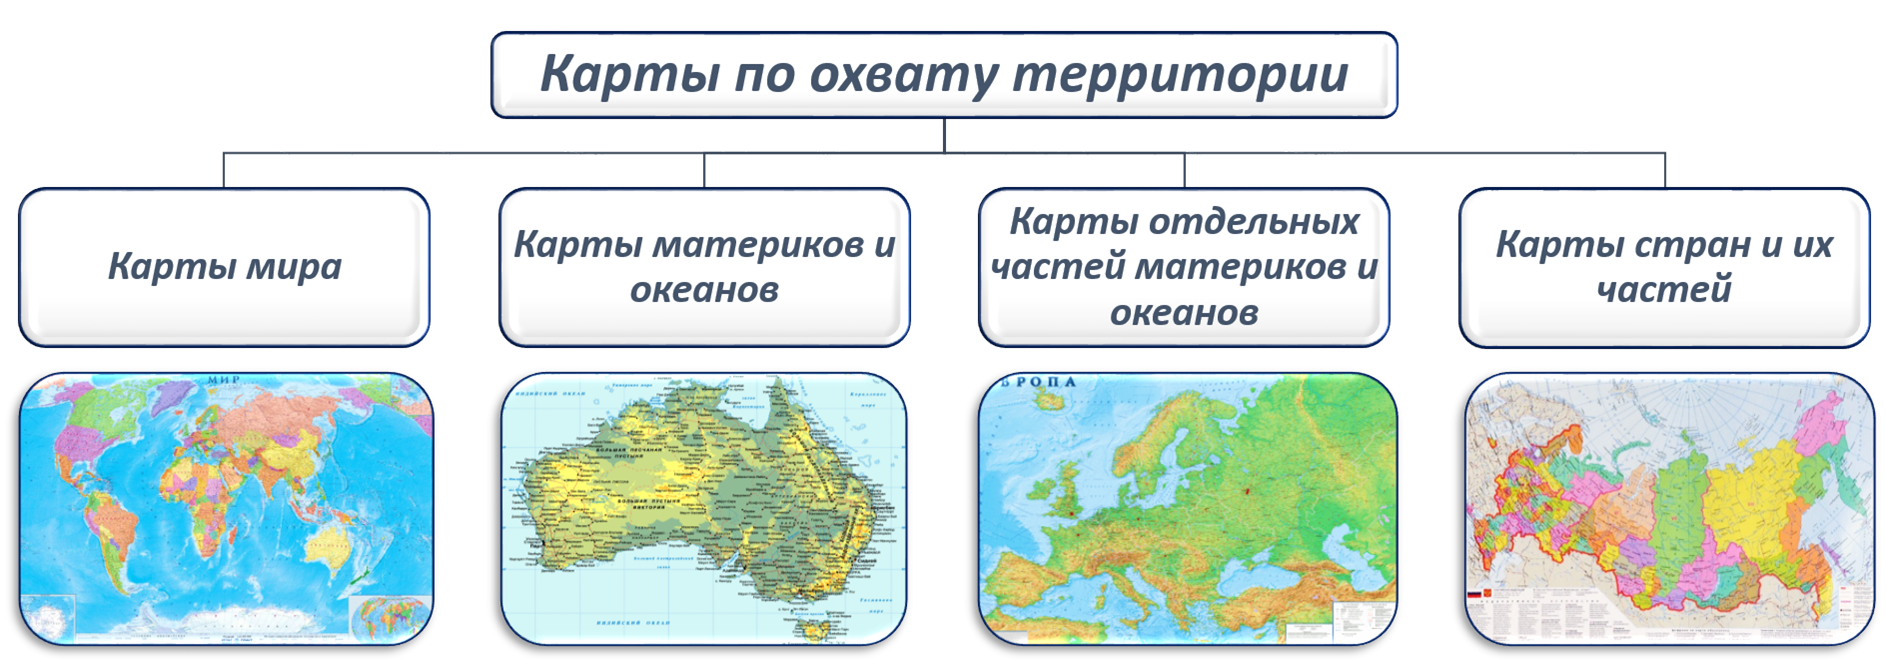 Какая карта называется физической. Карты типы карт географических. Виды карт по масштабу география. Географическая карта типы географических карт.